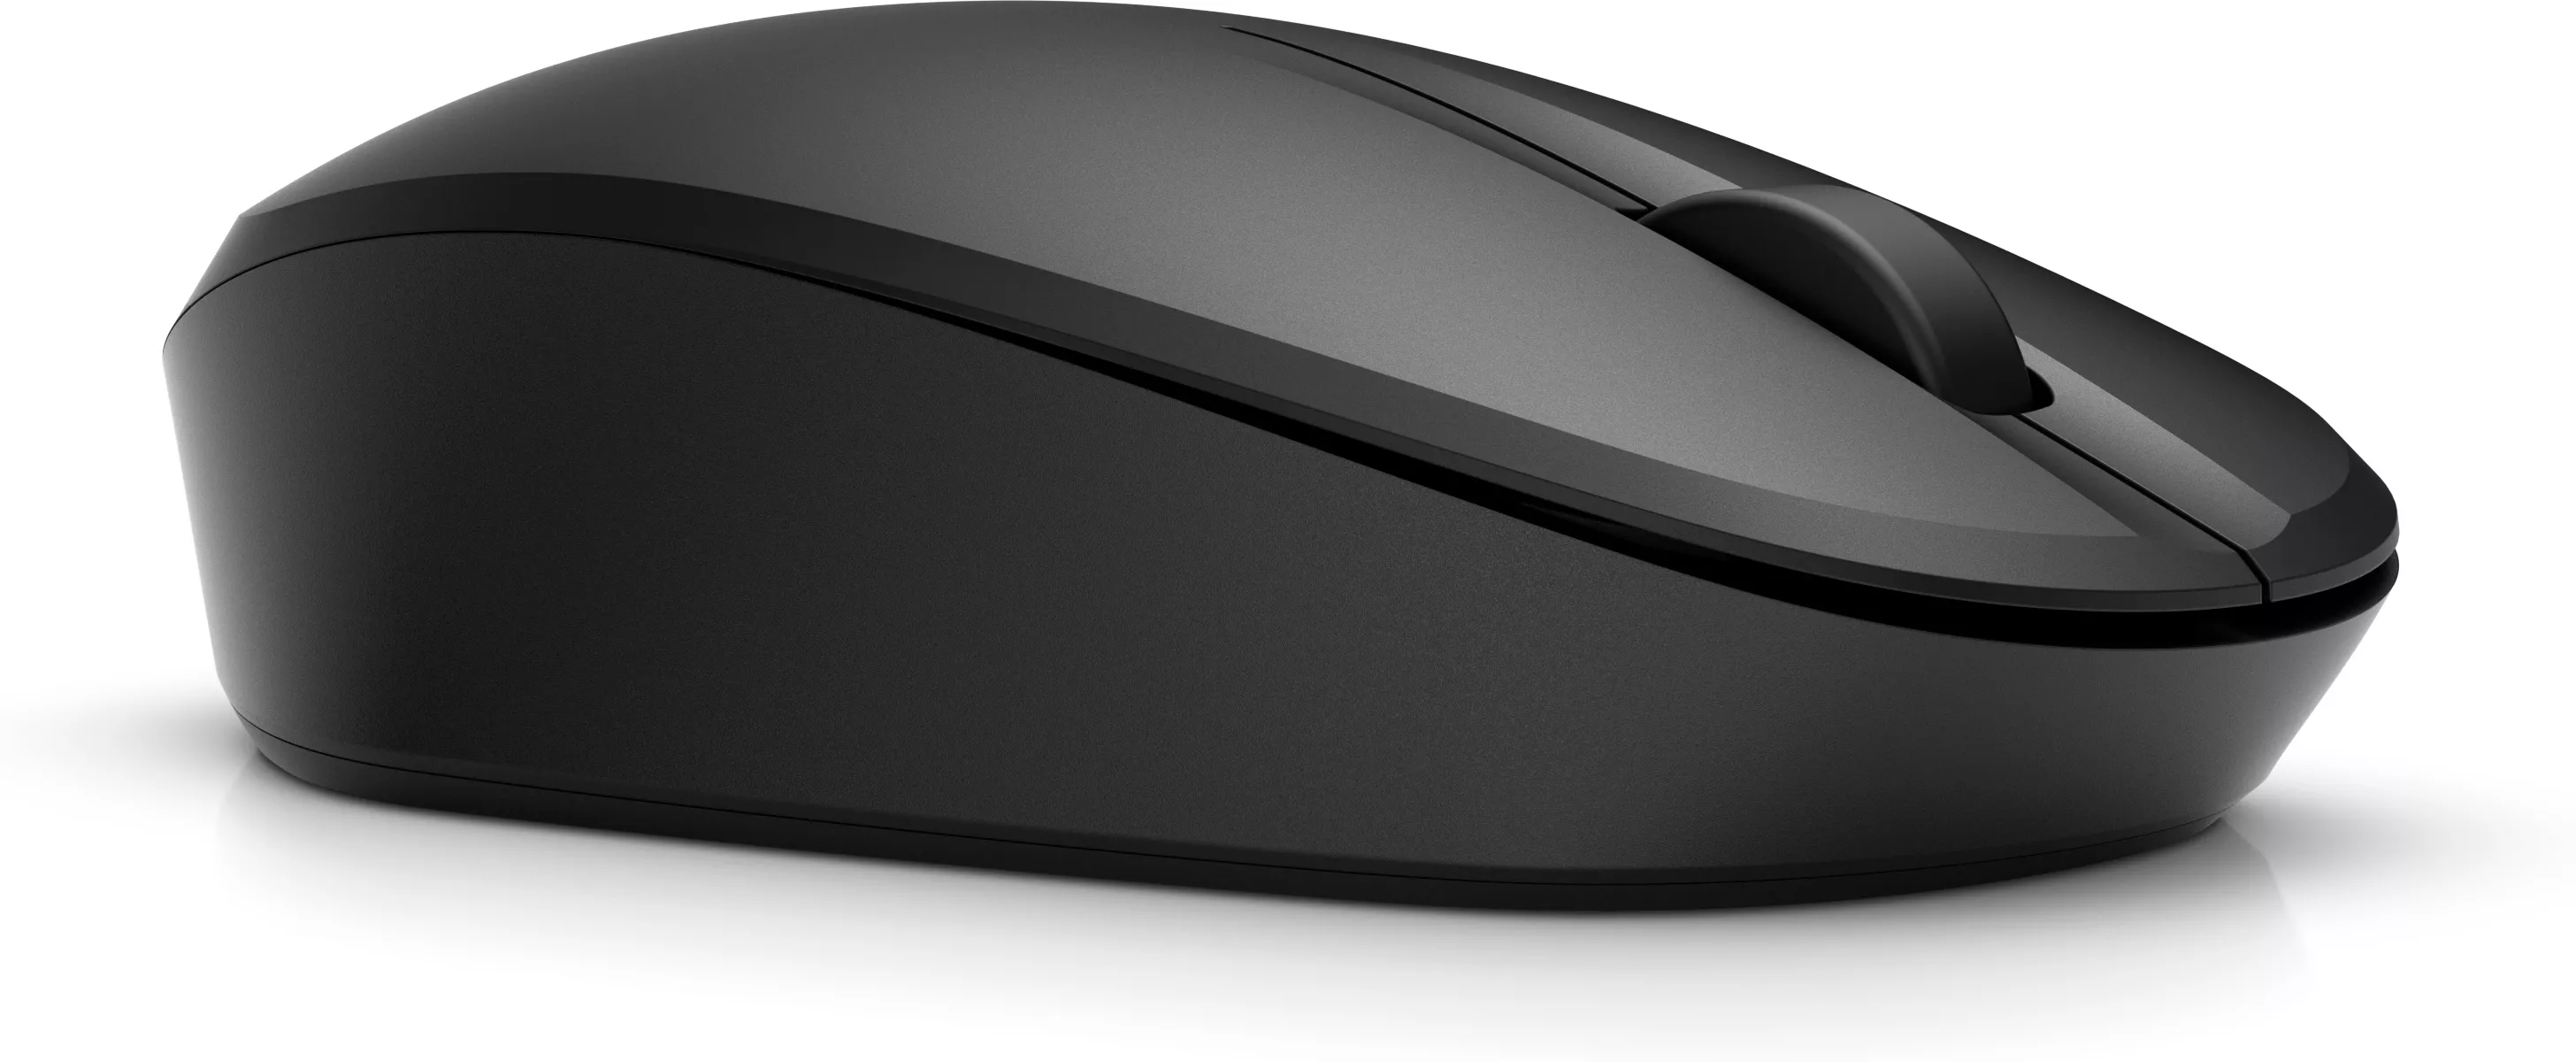 Achat HP Dual Mode Black Mouse sur hello RSE - visuel 3